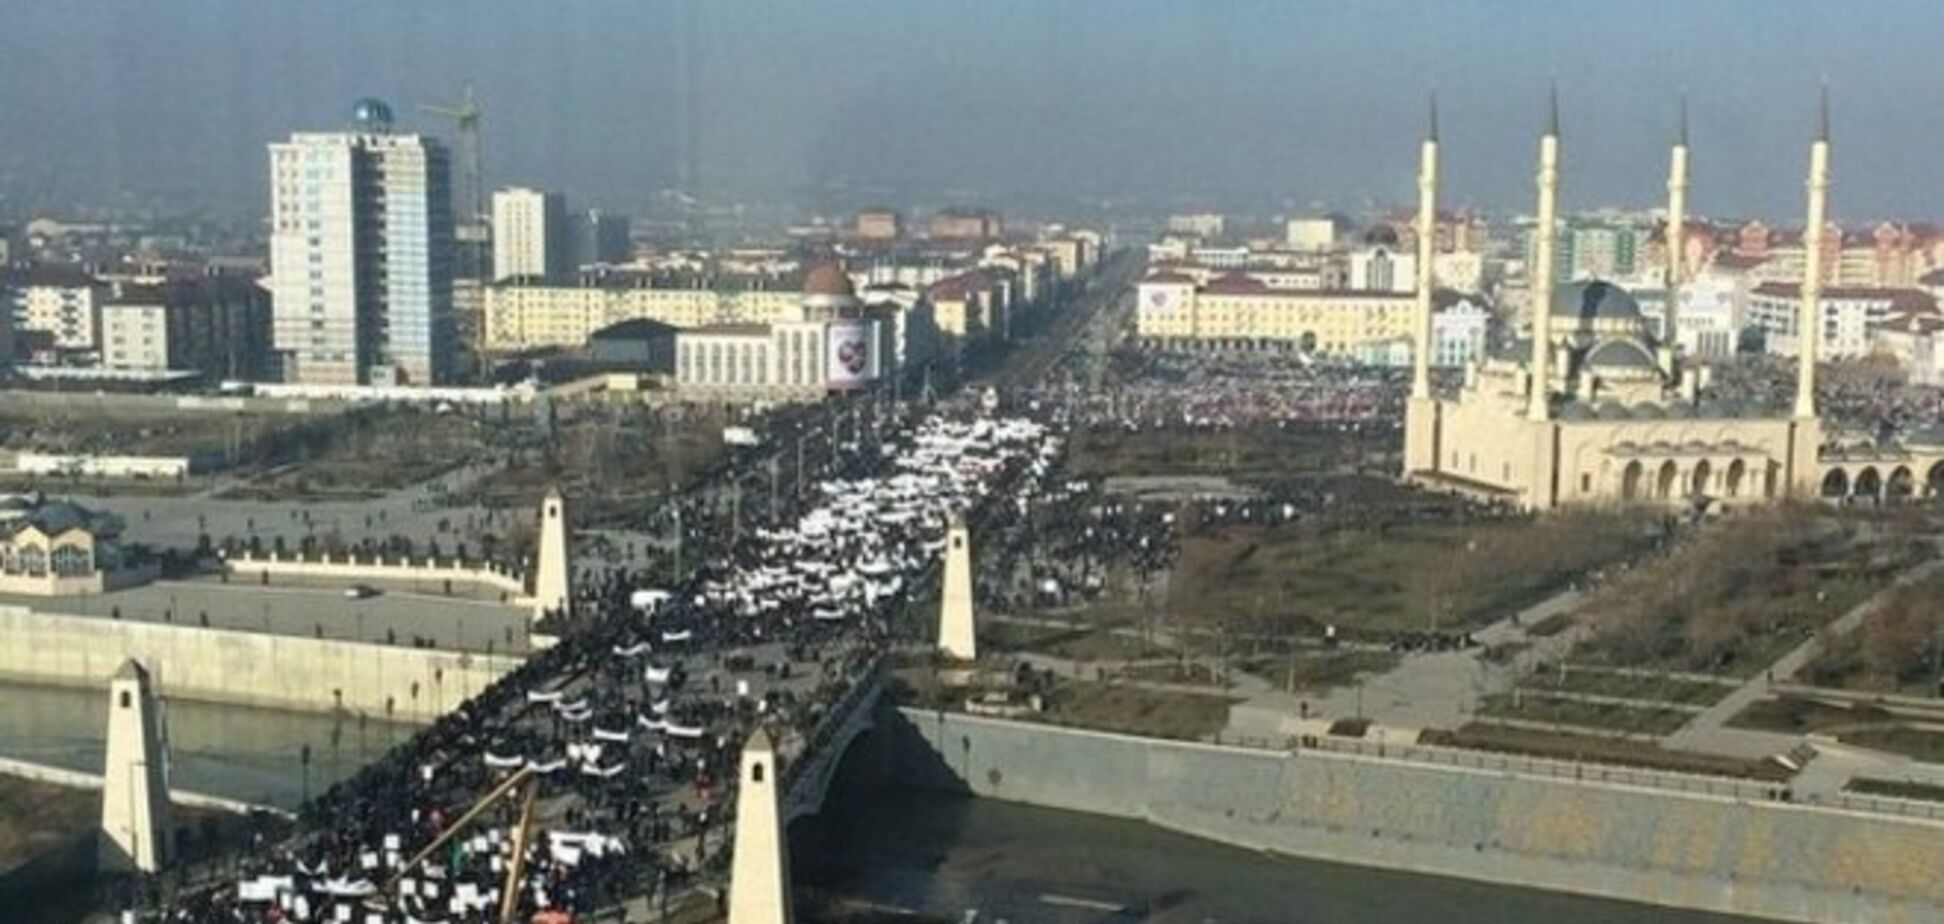 На 'антикарикатурный' митинг в Грозный свезли более миллиона человек: опубликовано фото